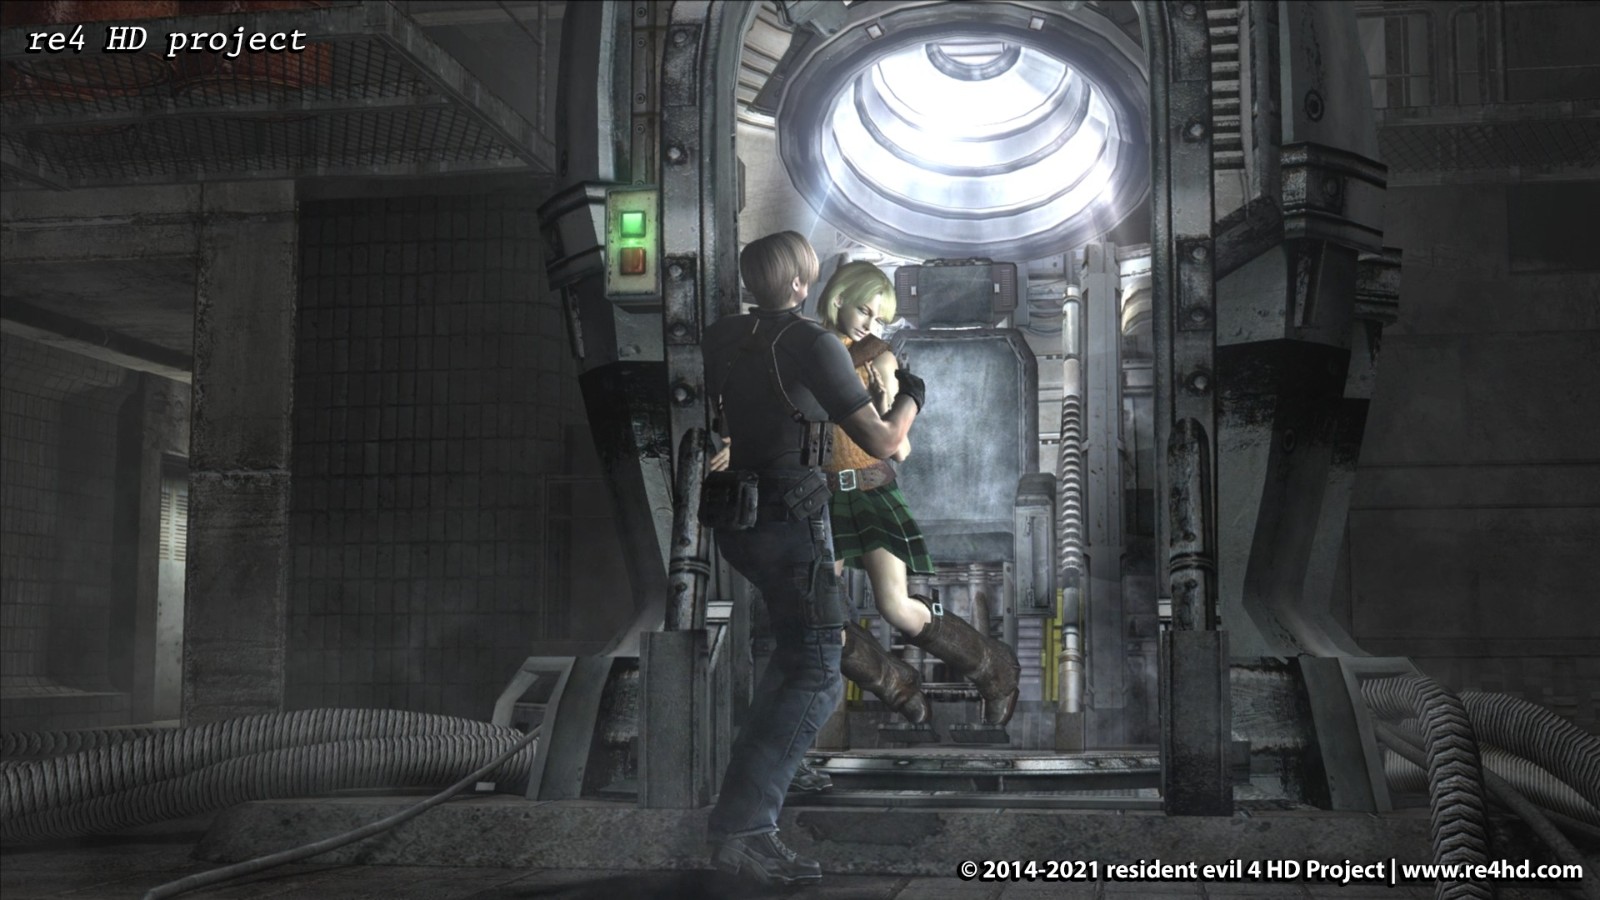 《生化危机4》民间HD版新进展 画面升级艾达王更美